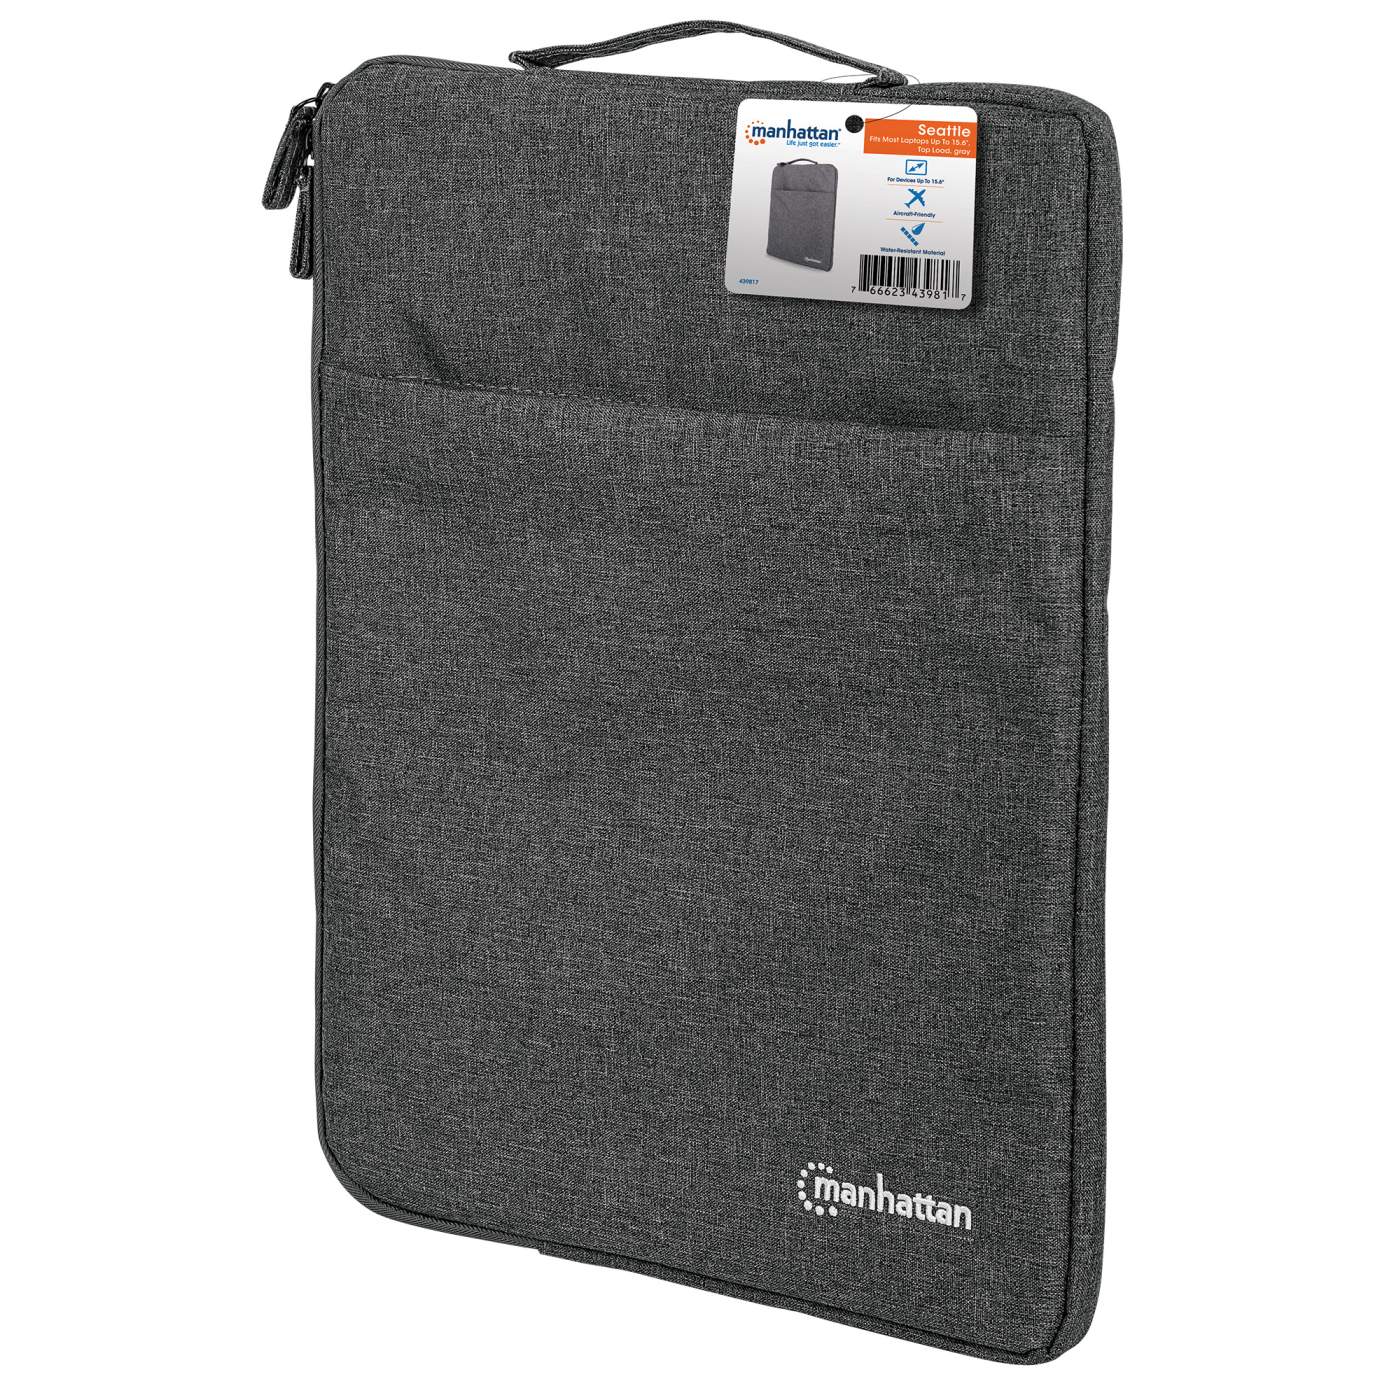 Original Apple Mini Ziplock Bags - Clear (25mm x 25mm)